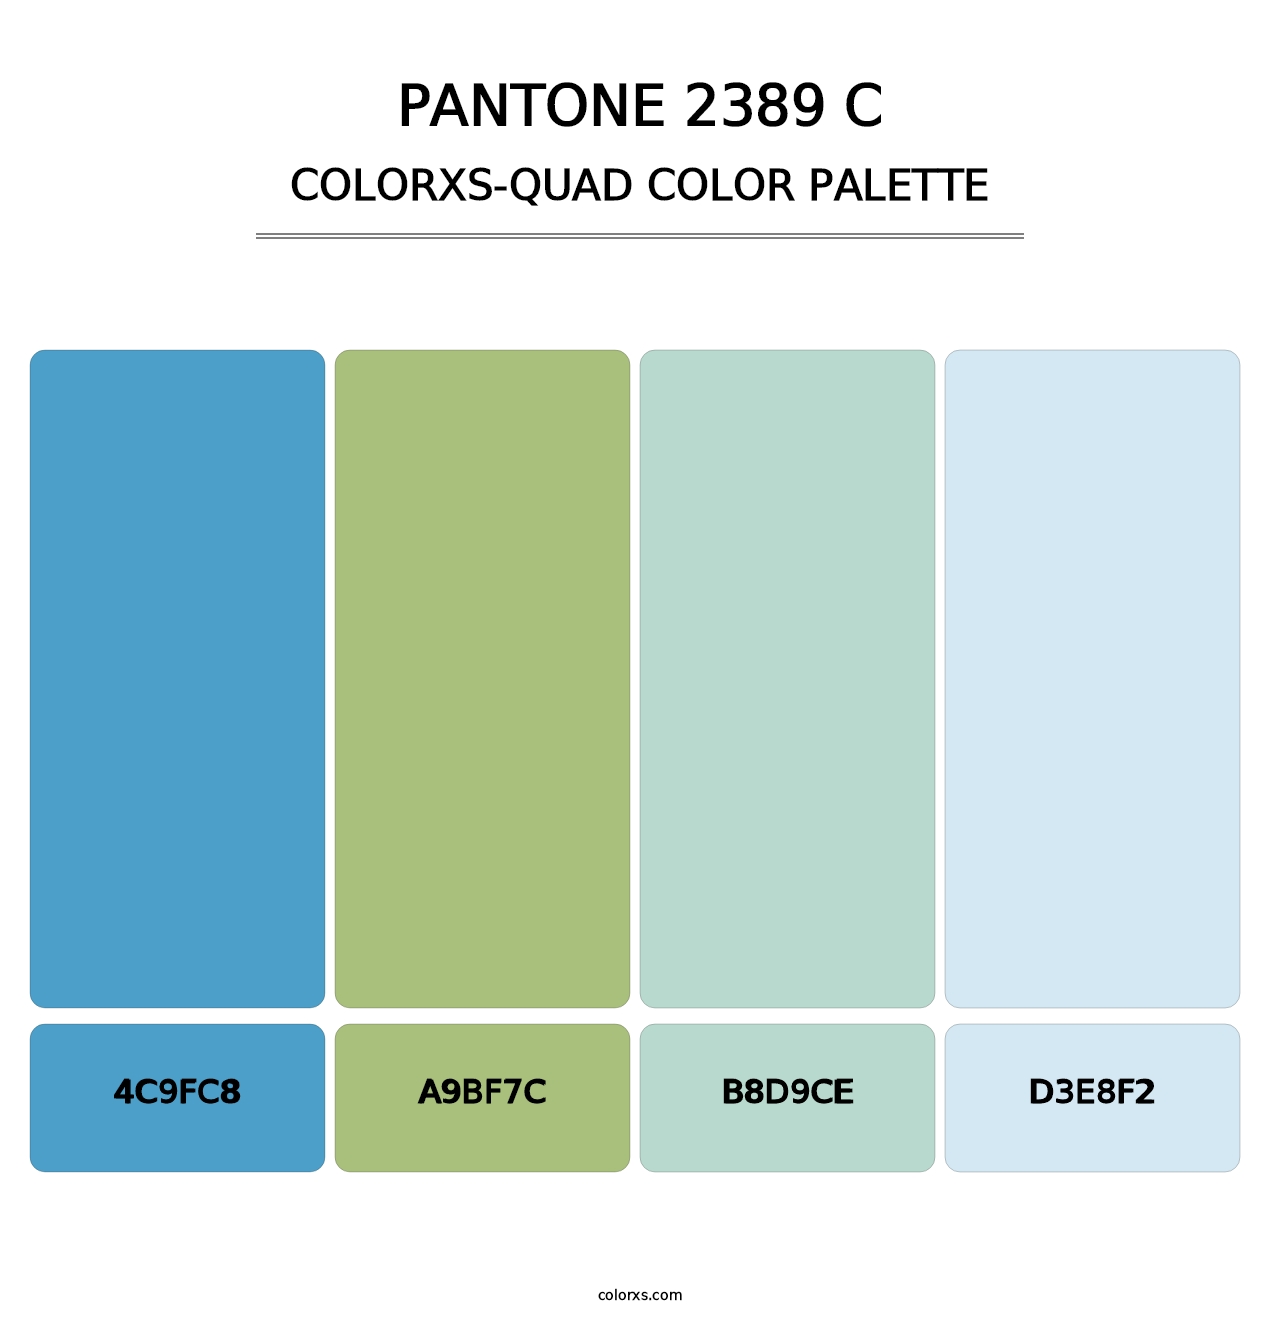 PANTONE 2389 C - Colorxs Quad Palette